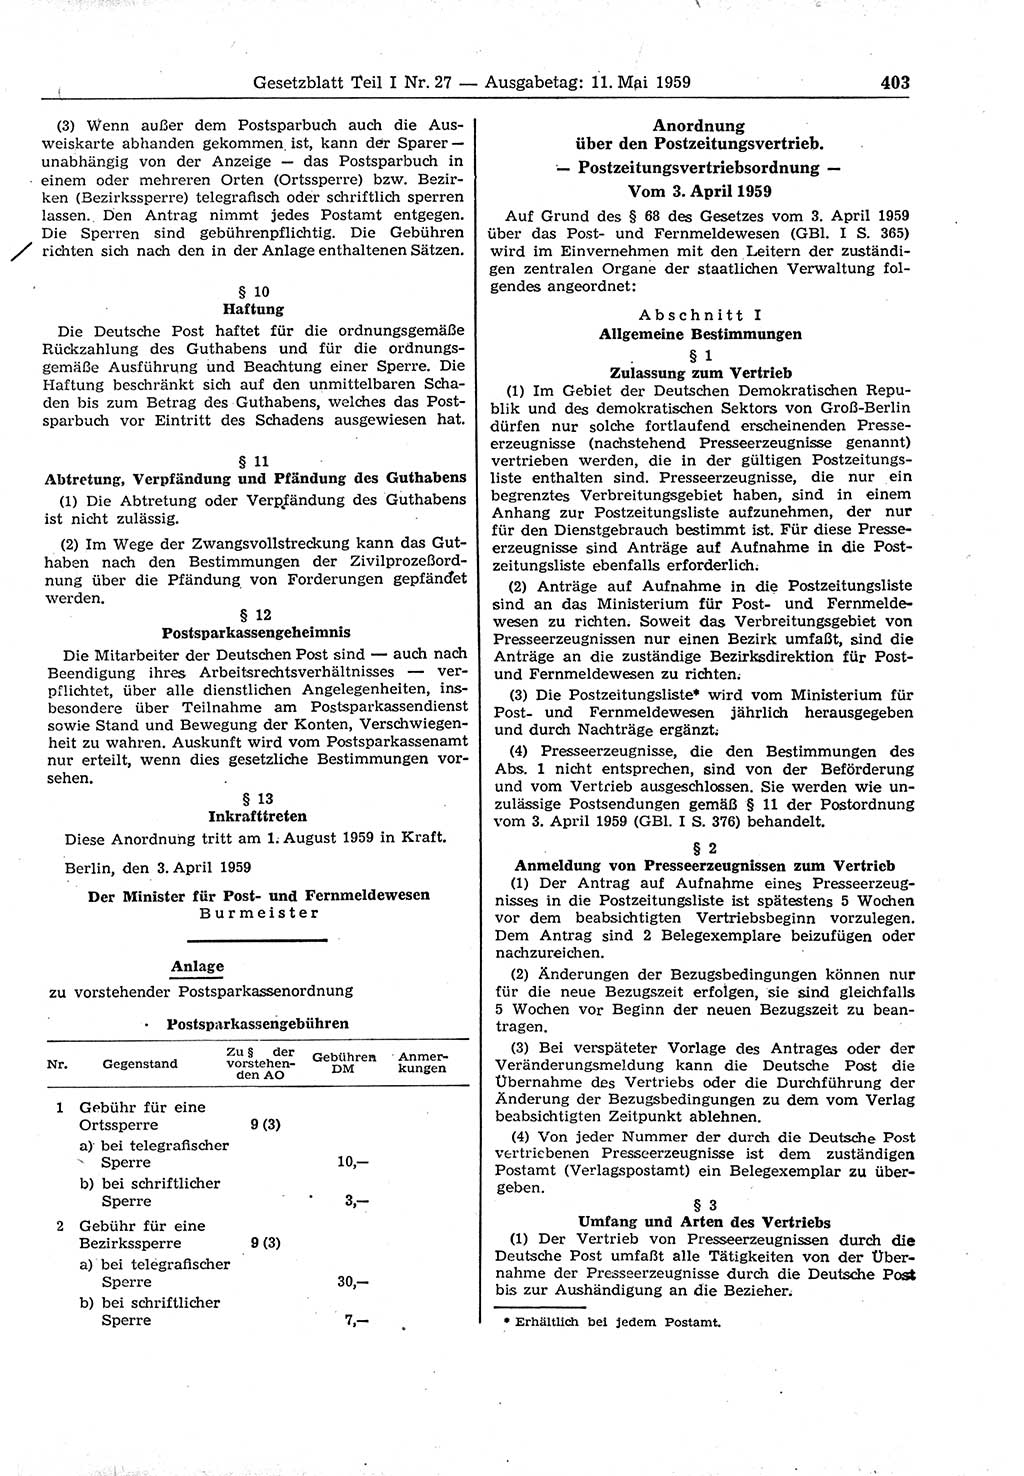 Gesetzblatt (GBl.) der Deutschen Demokratischen Republik (DDR) Teil Ⅰ 1959, Seite 403 (GBl. DDR Ⅰ 1959, S. 403)